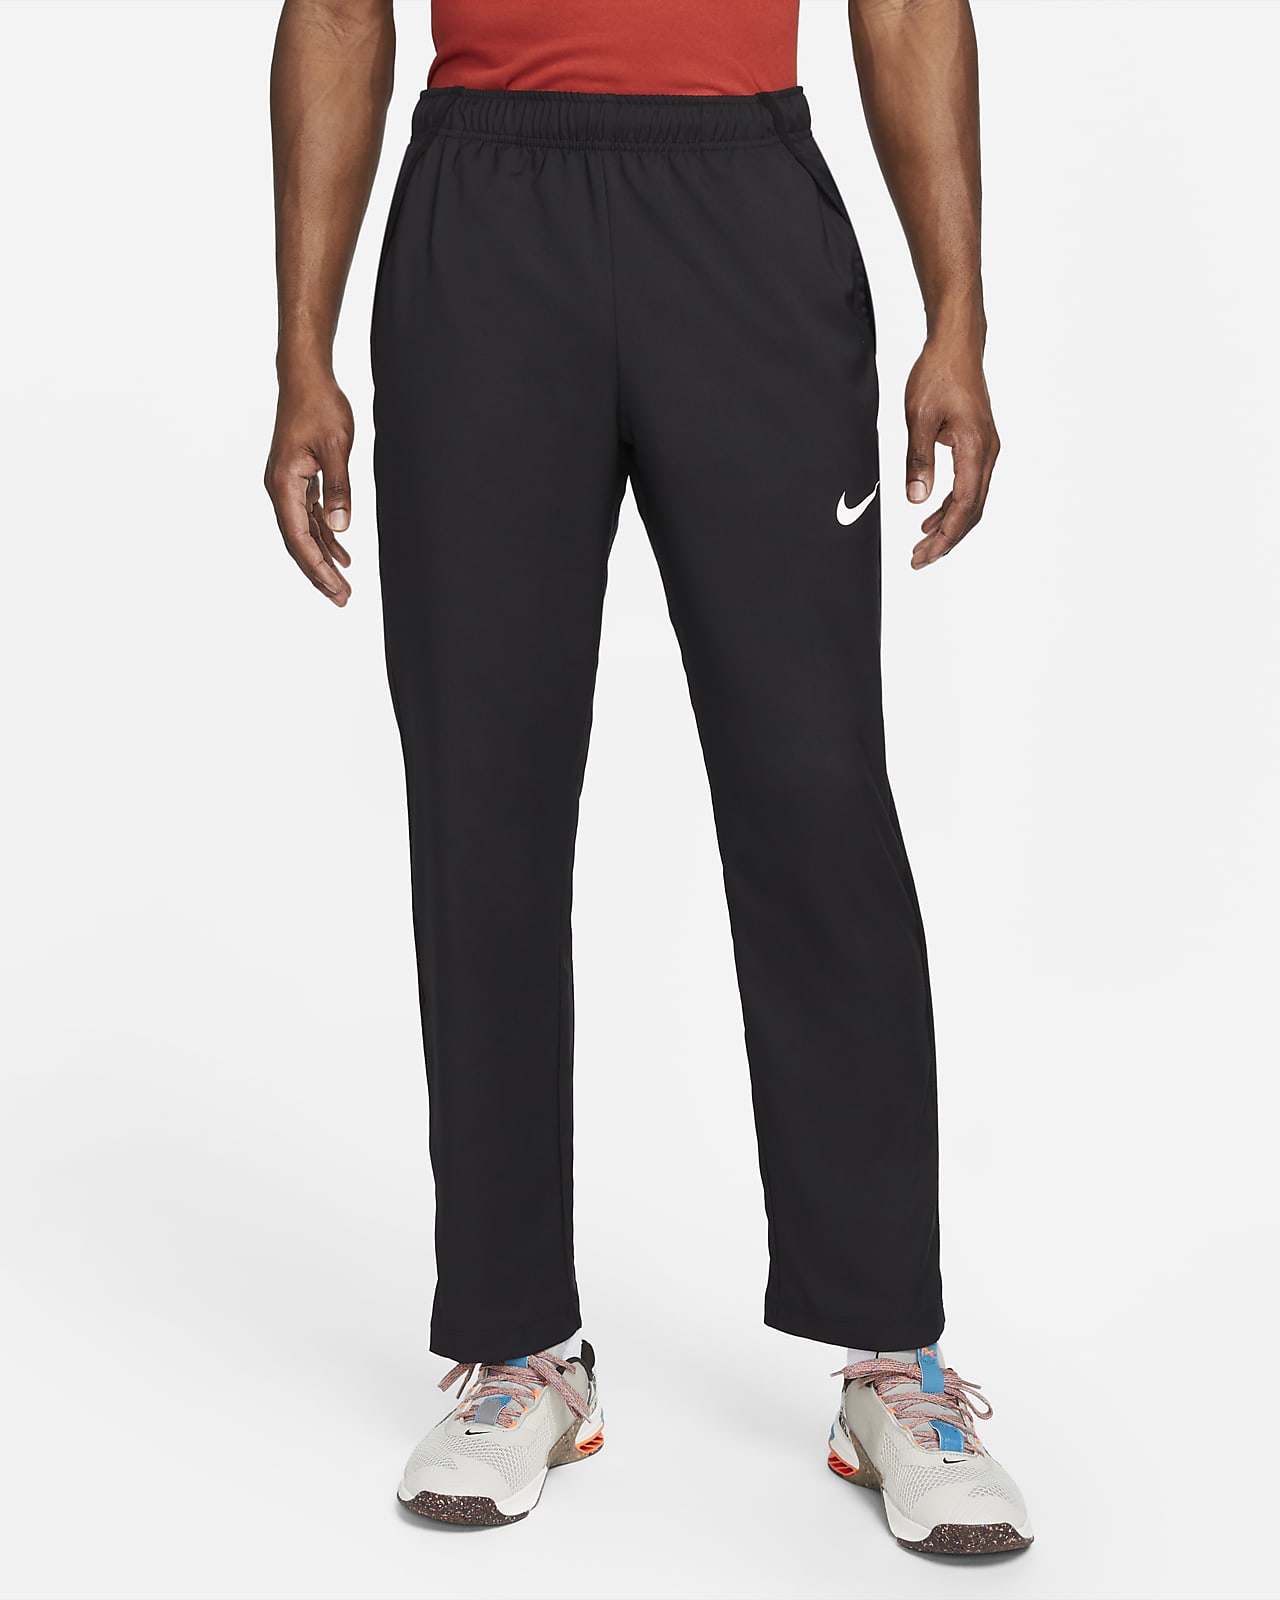 Ανδρικό υφαντό παντελόνι προπόνησης ομάδας Nike Dri-FIT